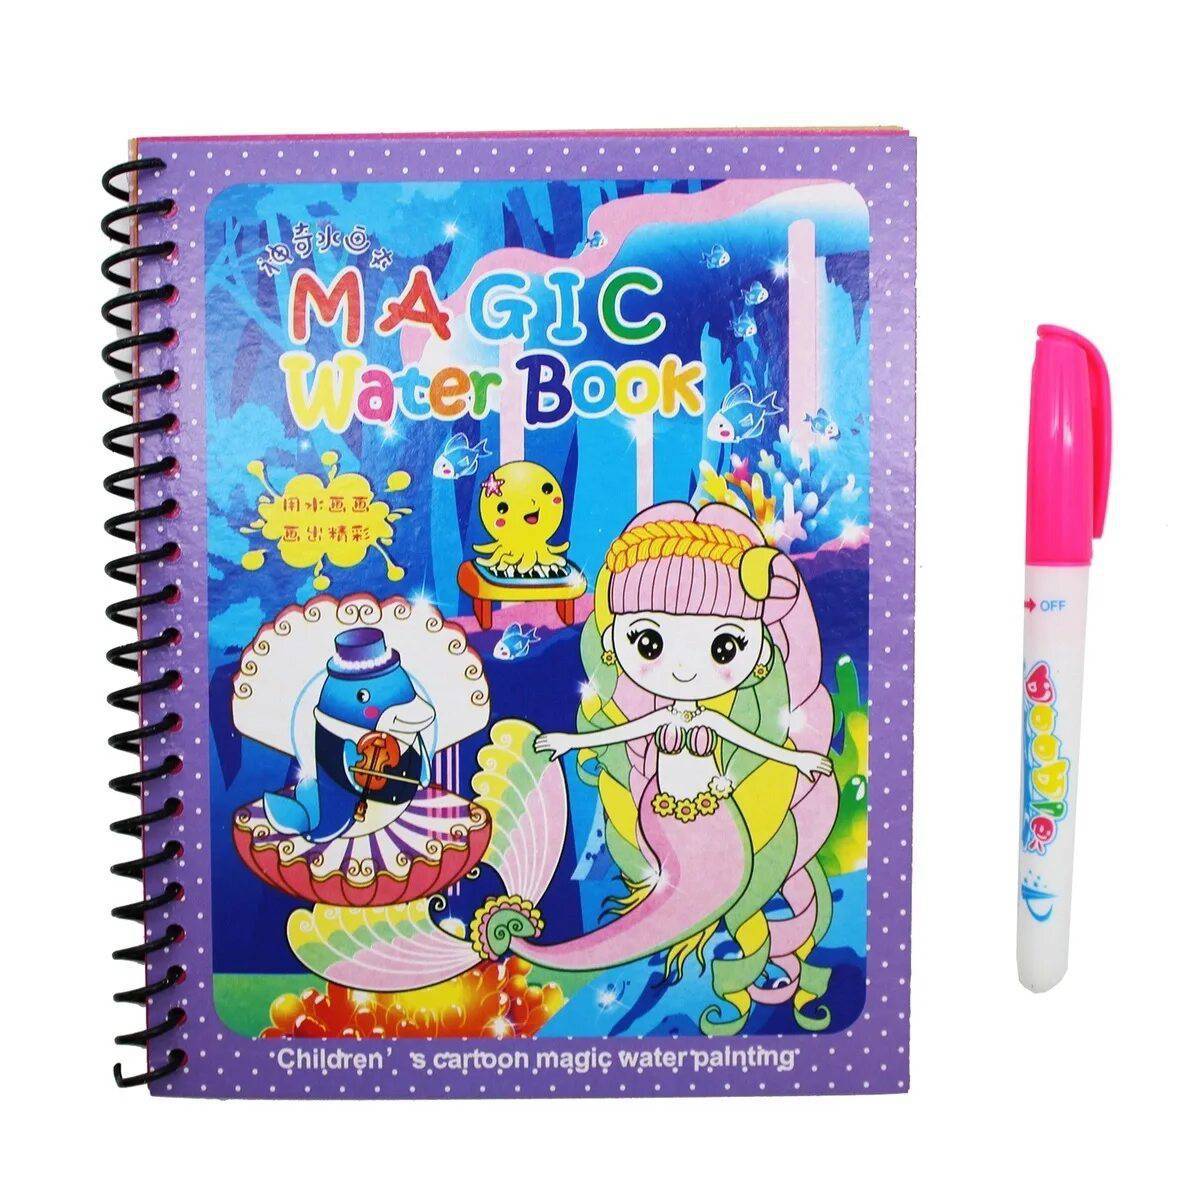 Magic water book #6